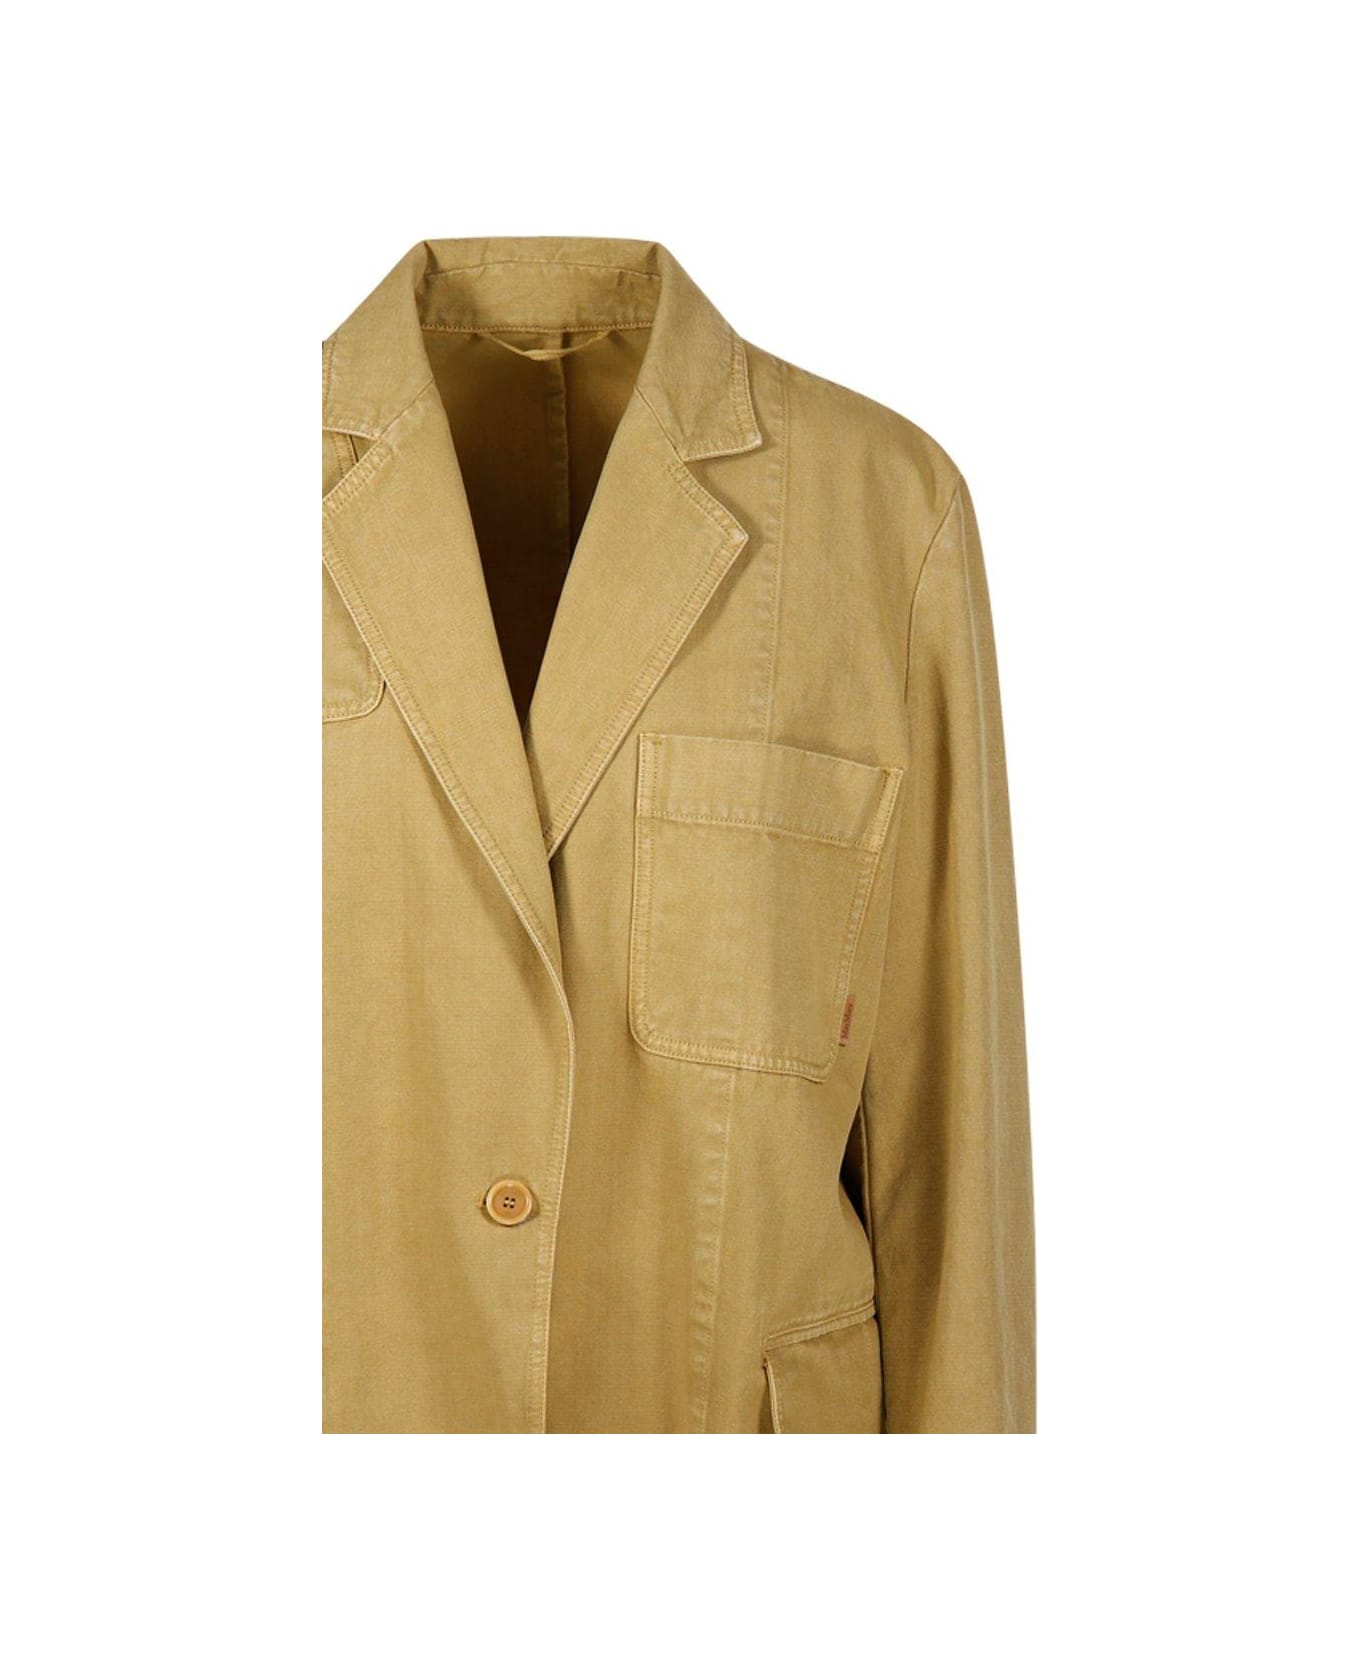 Max Mara Single-breasted Long-sleeved Jacket - Yellow コート